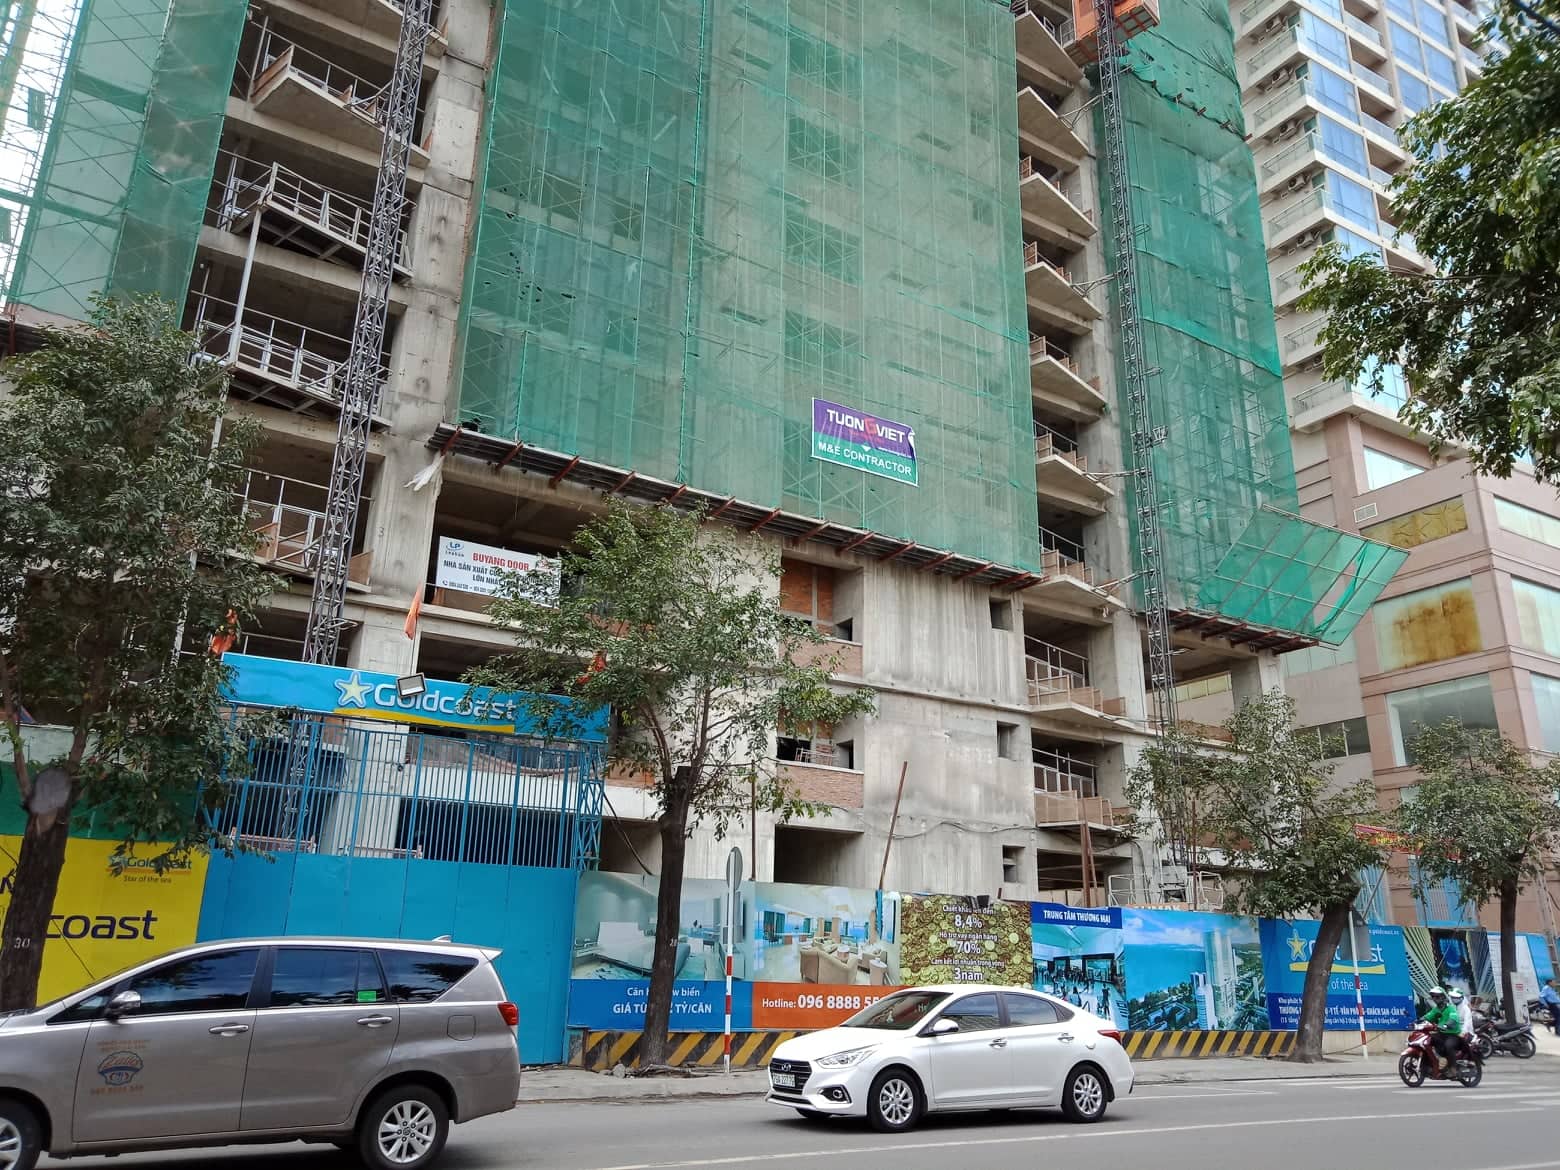  Công ty Cổ phần Thanh Yến bán 45 căn hộ tại Dự án Trung tâm Thương mại Bờ Biển Vàng - Gold Coast 1 cho các cá nhân, tổ chức nước ngoài là chưa có cơ sở